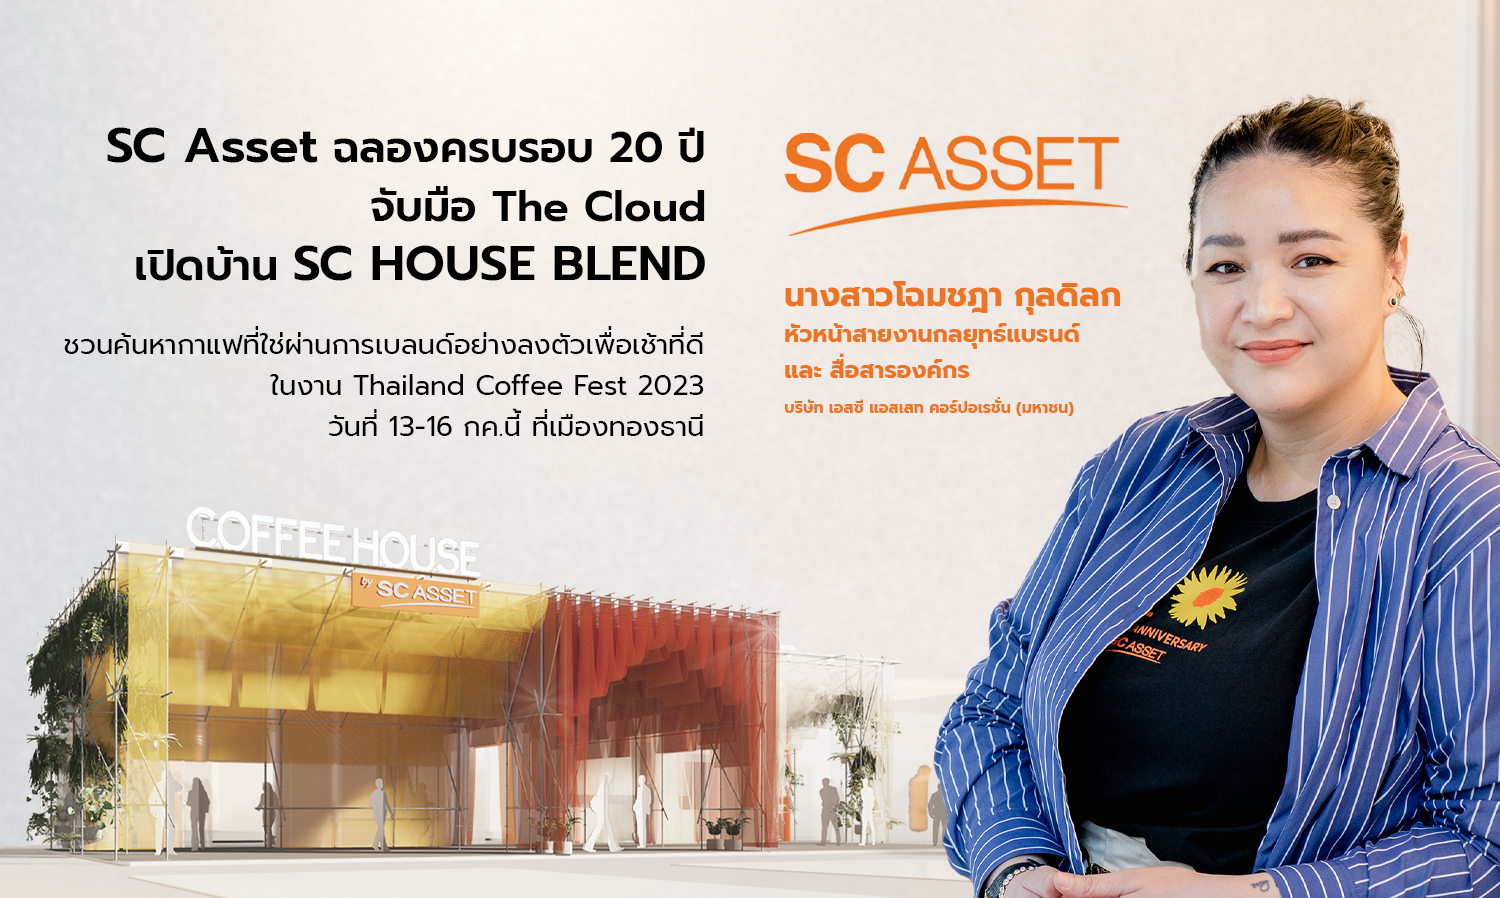 SC Asset ฉลองครบรอบ 20 ปี จับมือ The Cloud เปิดบ้าน “SC HOUSE BLEND”  ชวนค้นหากาแฟที่ใช่ผ่านการเบลนด์อย่างลงตัวเพื่อเช้าที่ดี ในงาน Thailand Coffee Fest 2023 วันที่ 13-16 กค.นี้ ที่ เมืองทองธานี 